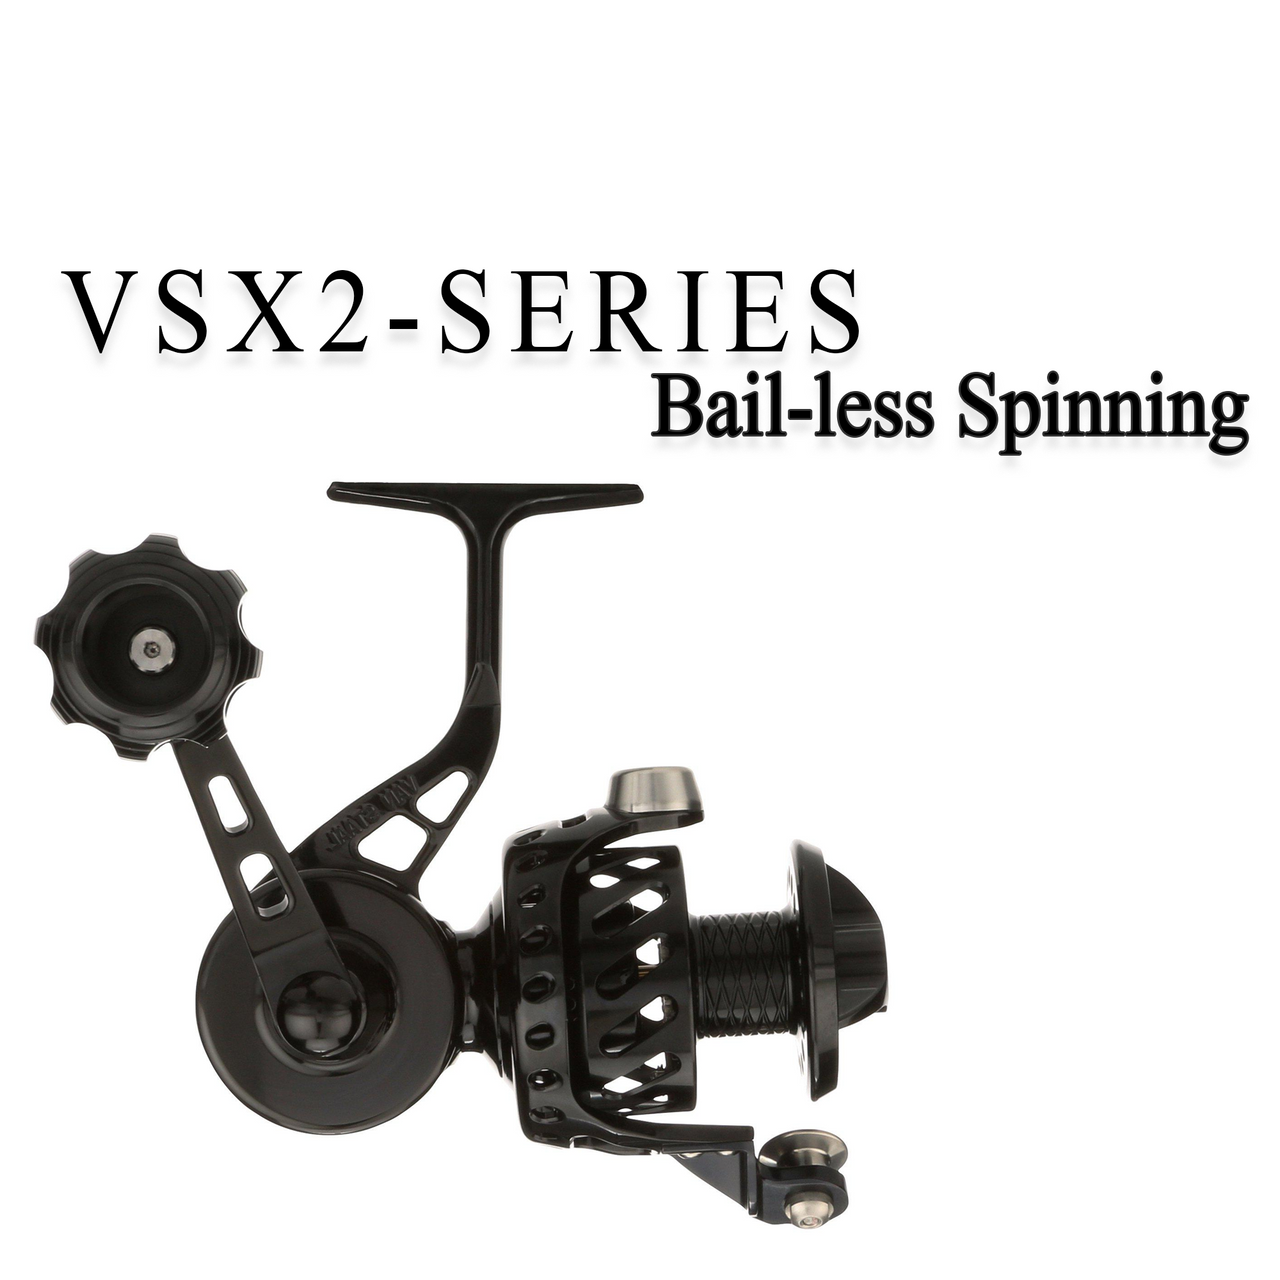 Van Staal VS X2-Series Bail-less VS150 Spinning Reel